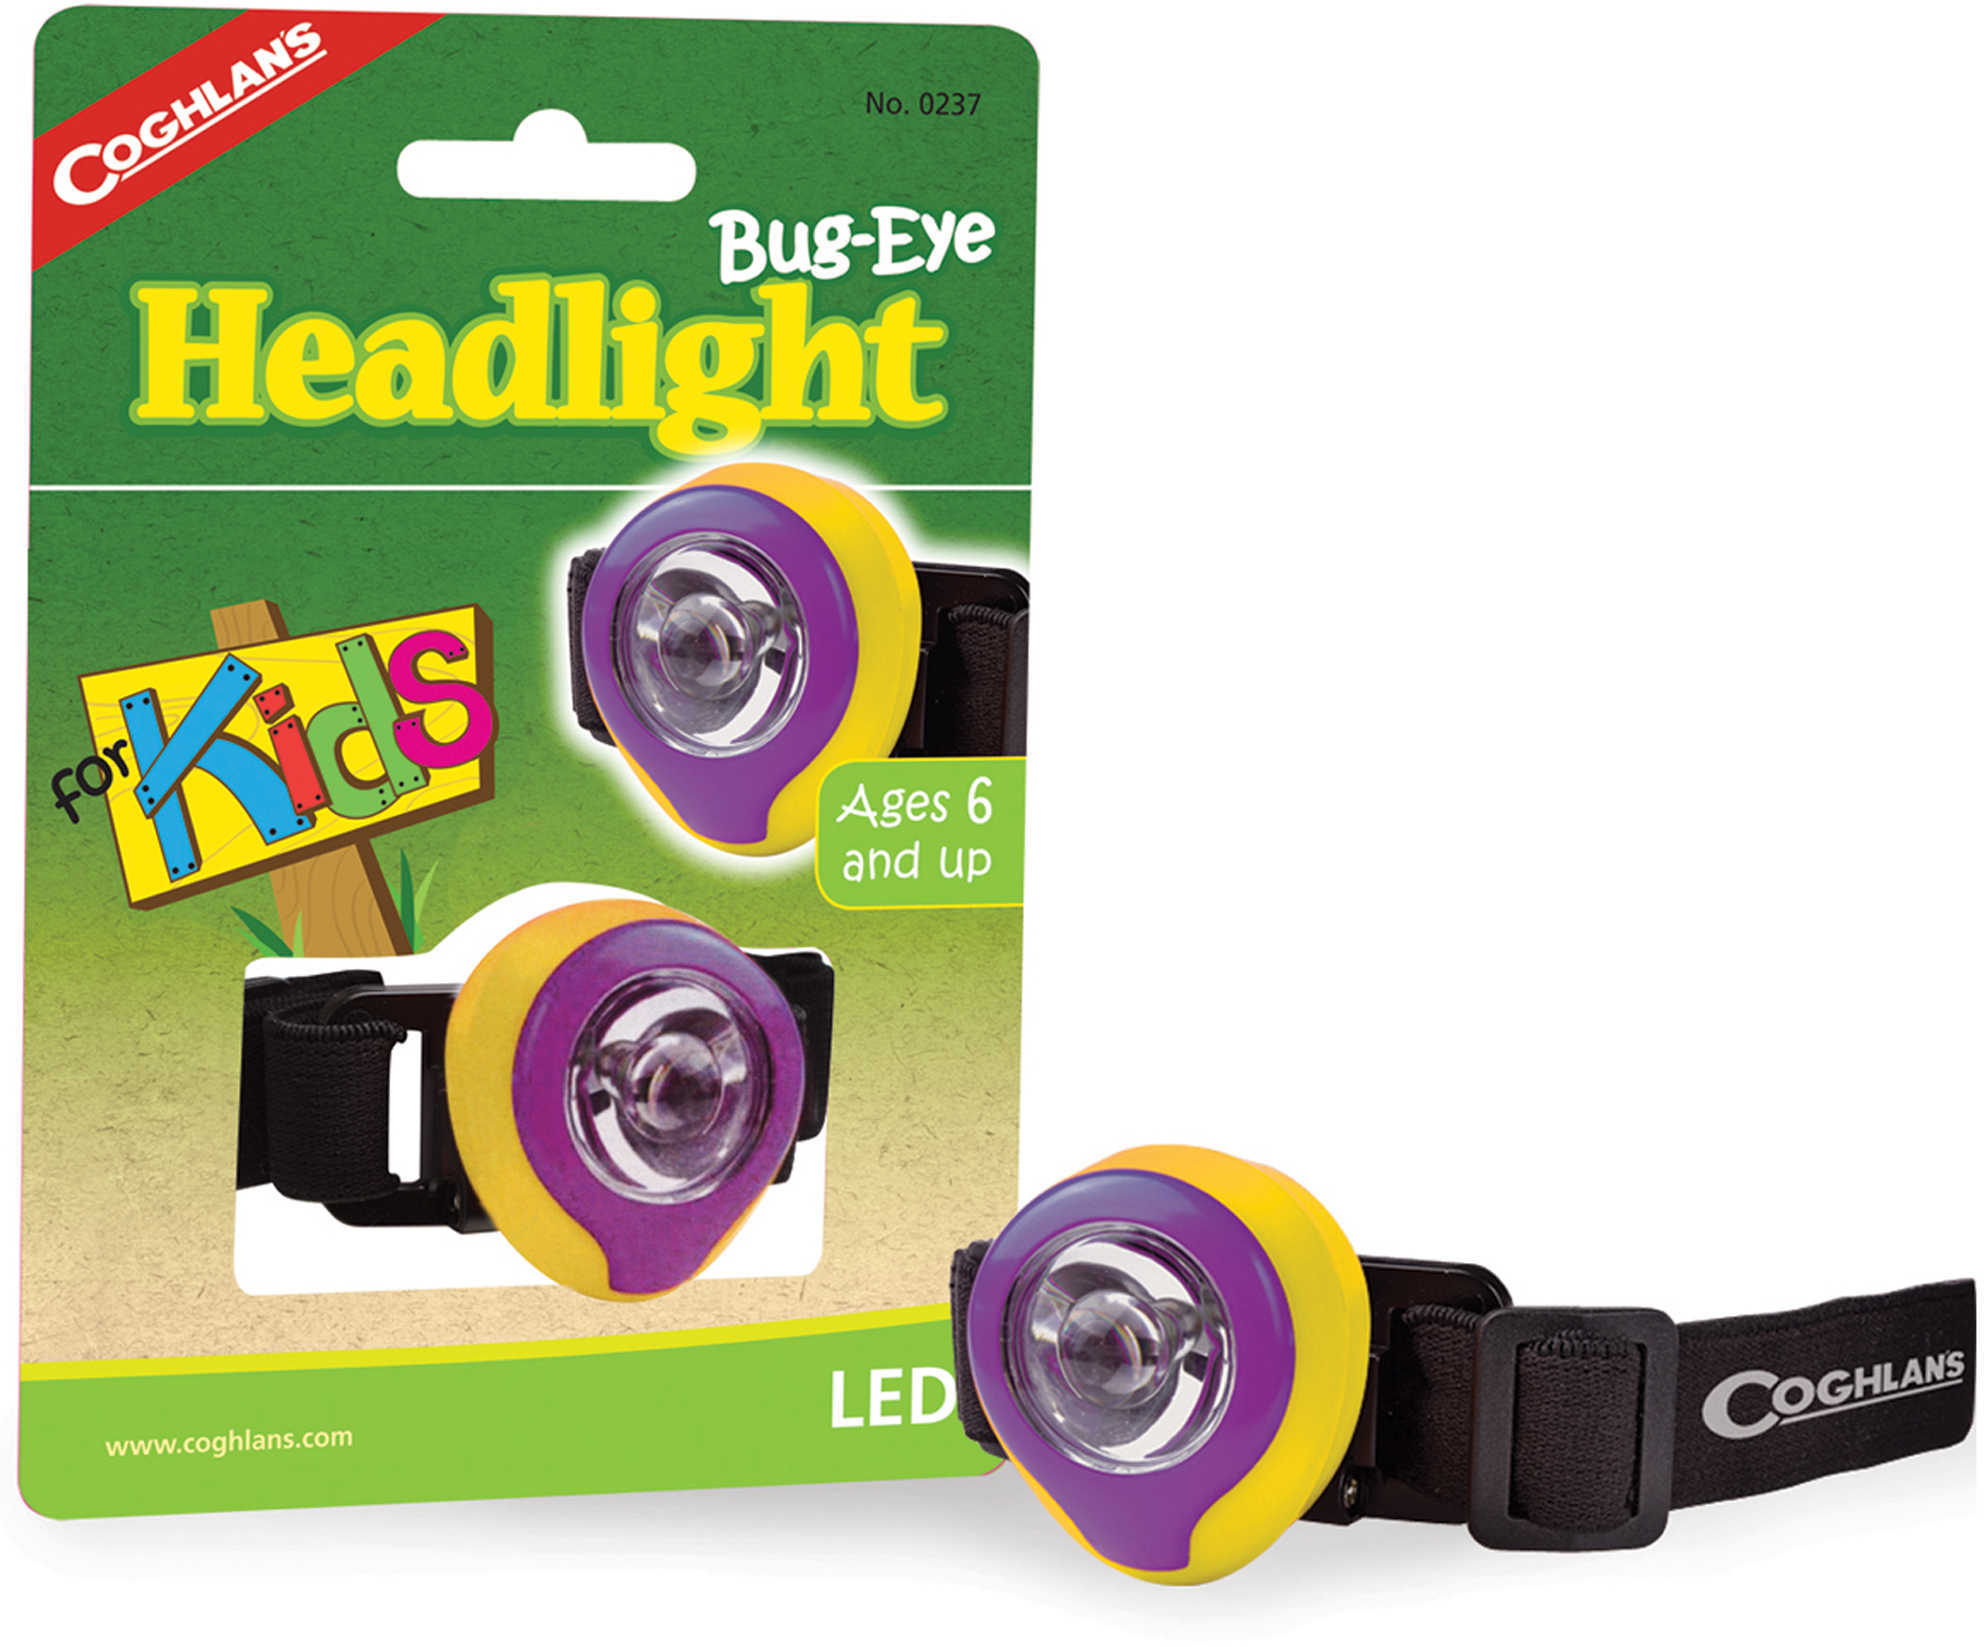 Coghlans Bug-Eye Headlight for Kids 0237